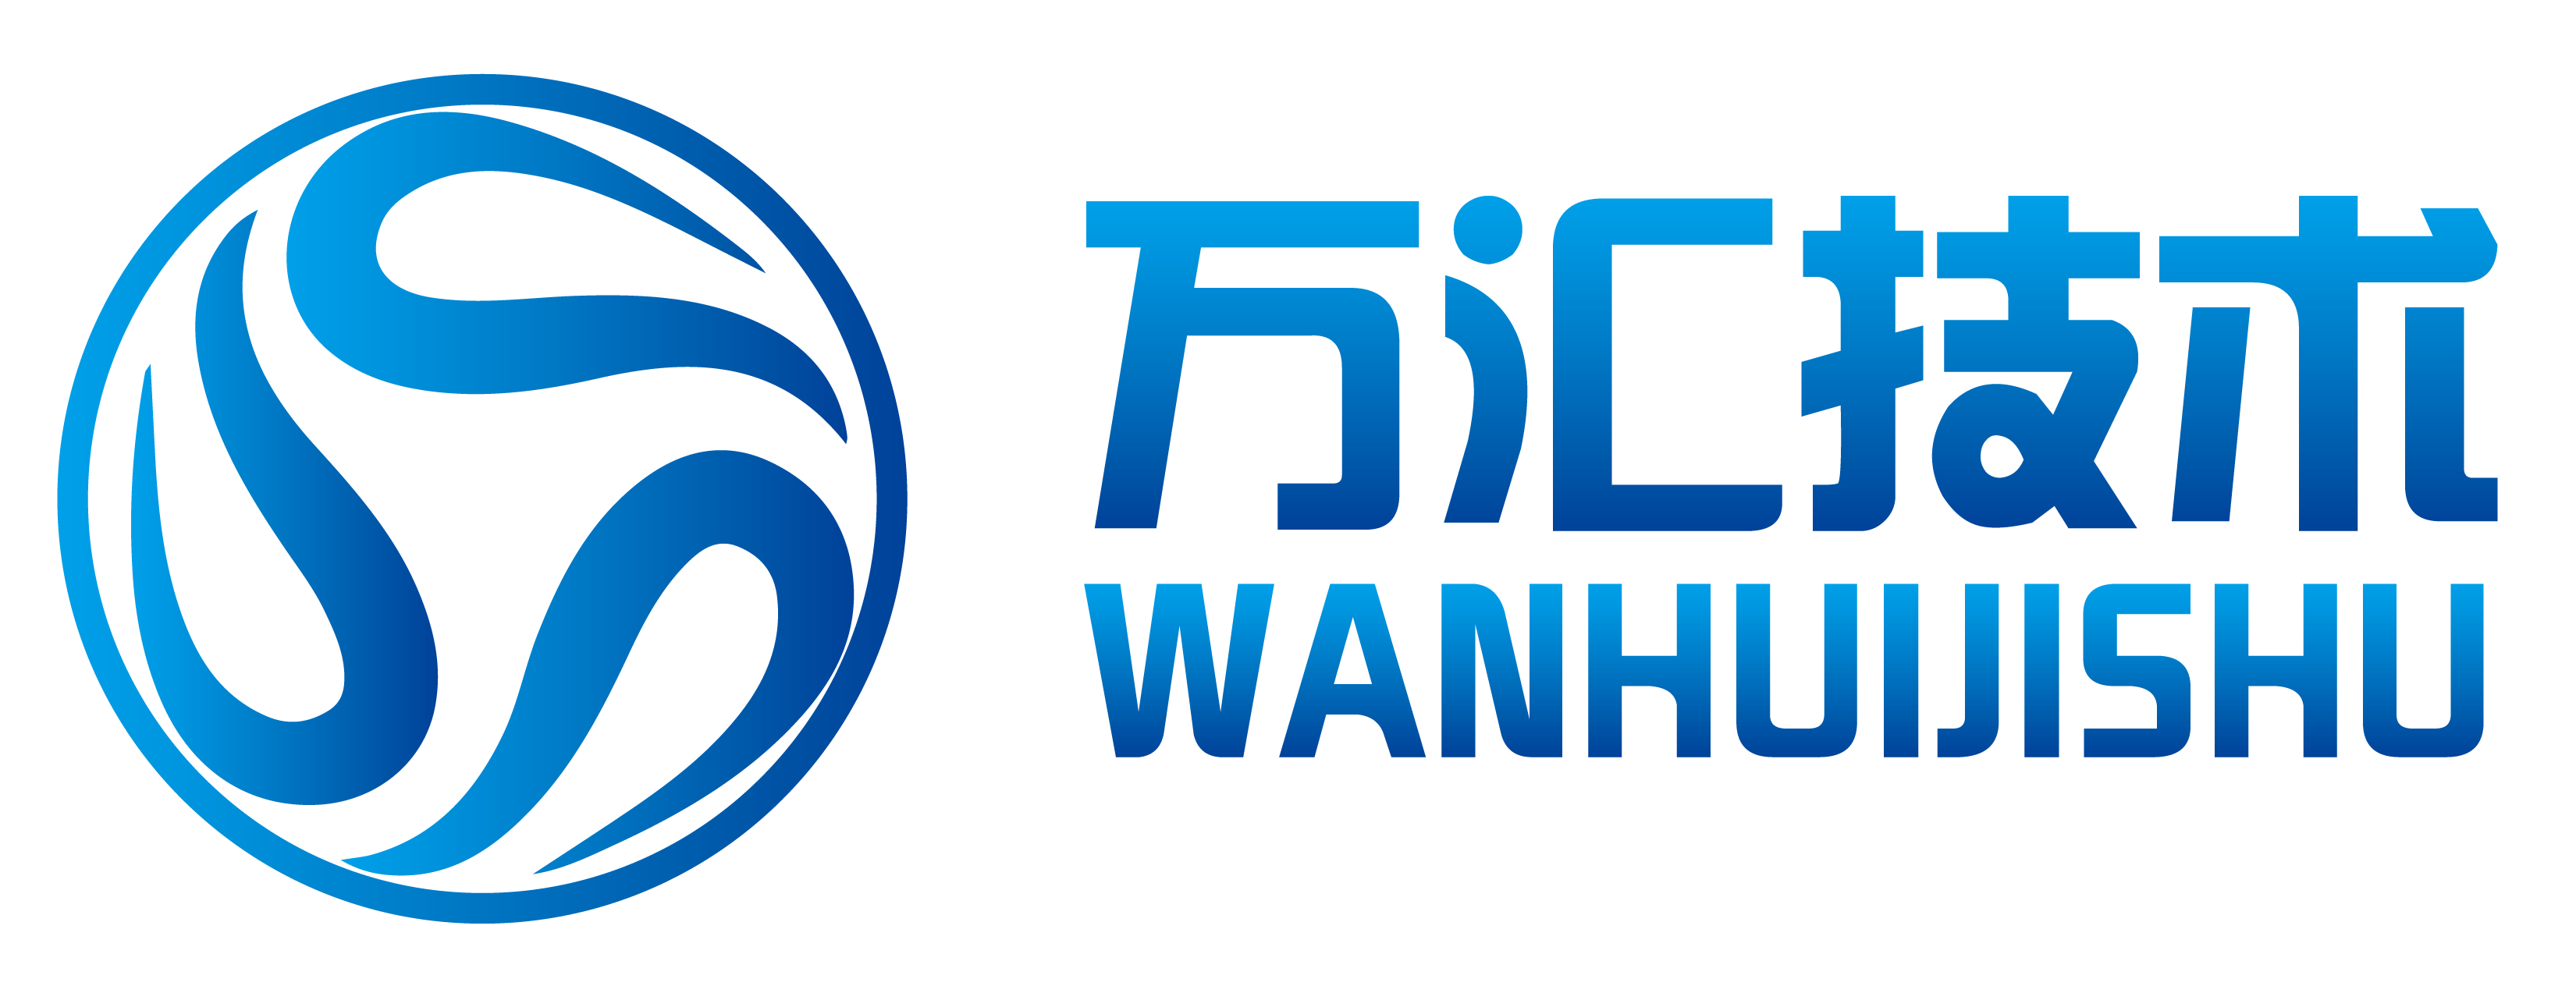 無(wú)人值守稱(chēng)重系統logo